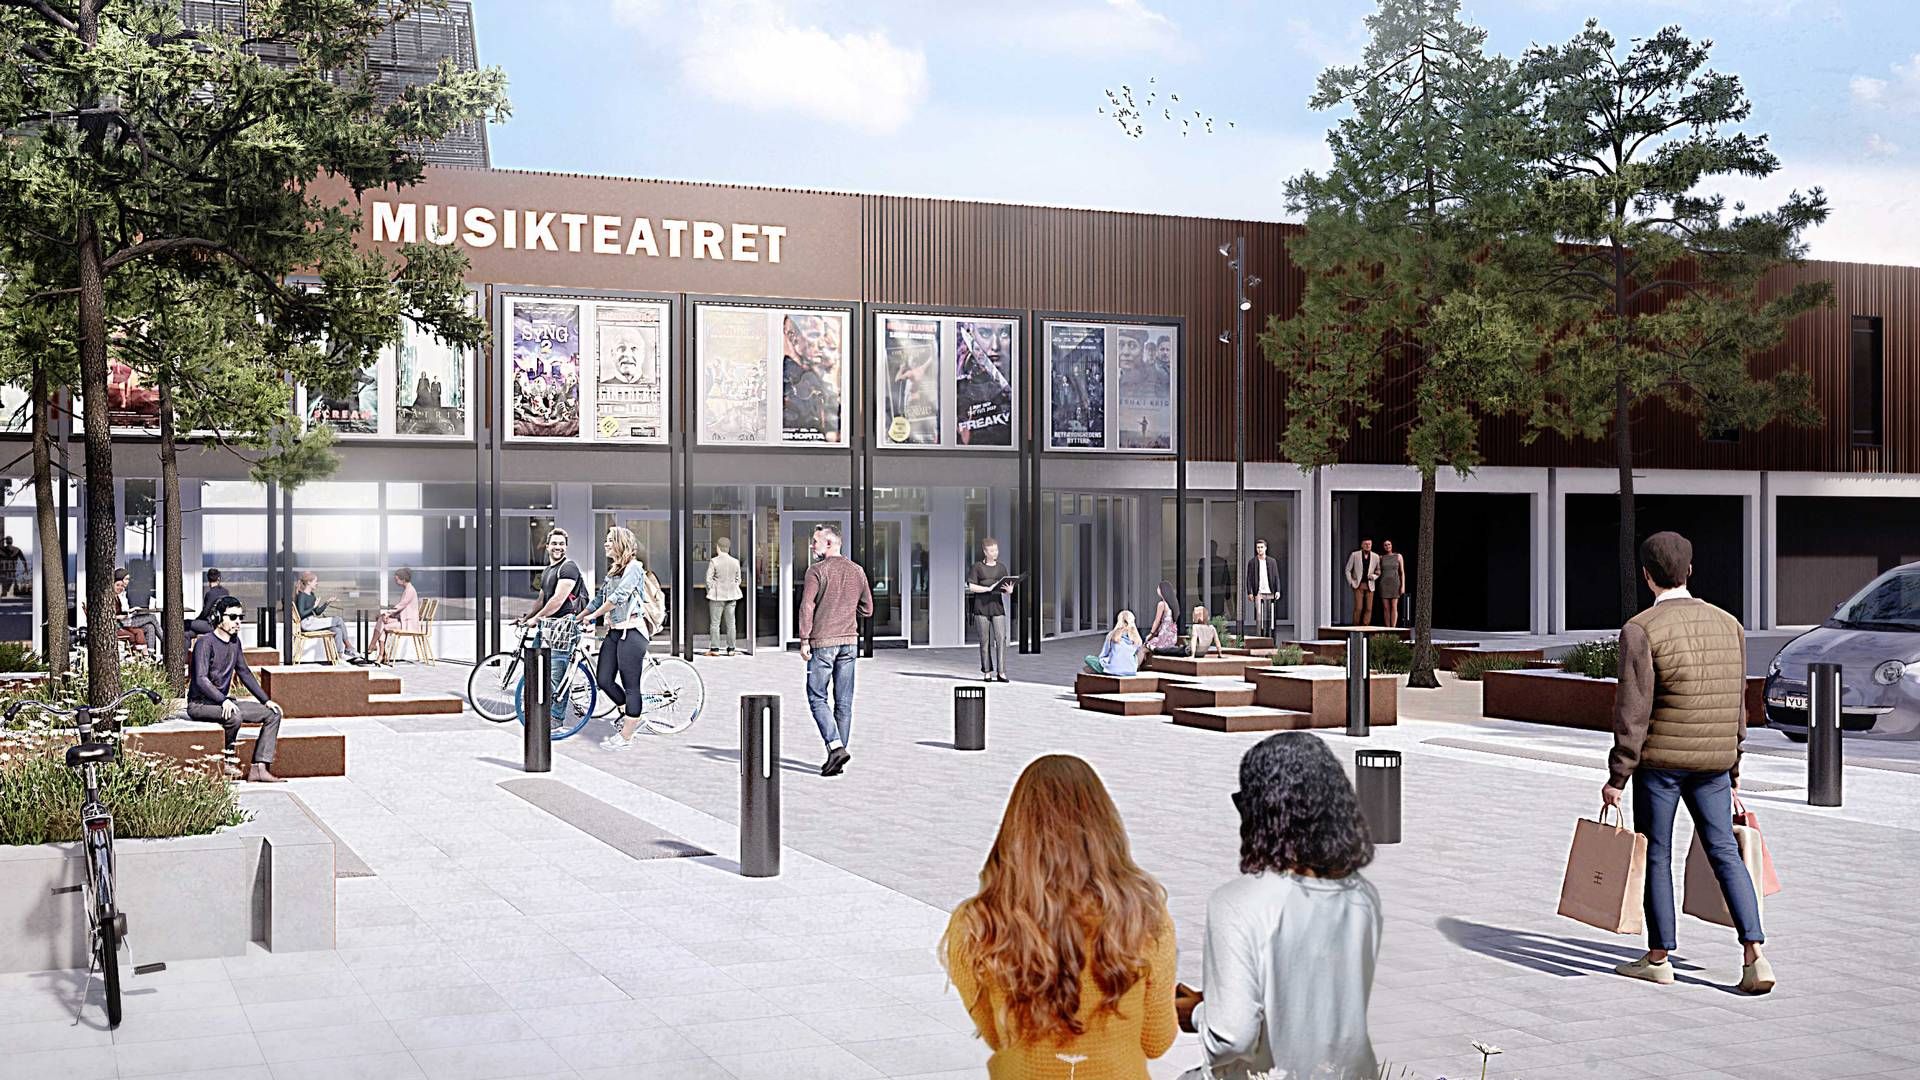 Kulturinstitutionerne Forbrændingen, biblioteket og, som her på billedet, Musikteatret skal integreres i den nye bymidte i Albertslund. | Foto: PR-visualisering / Urban Power for Citycon